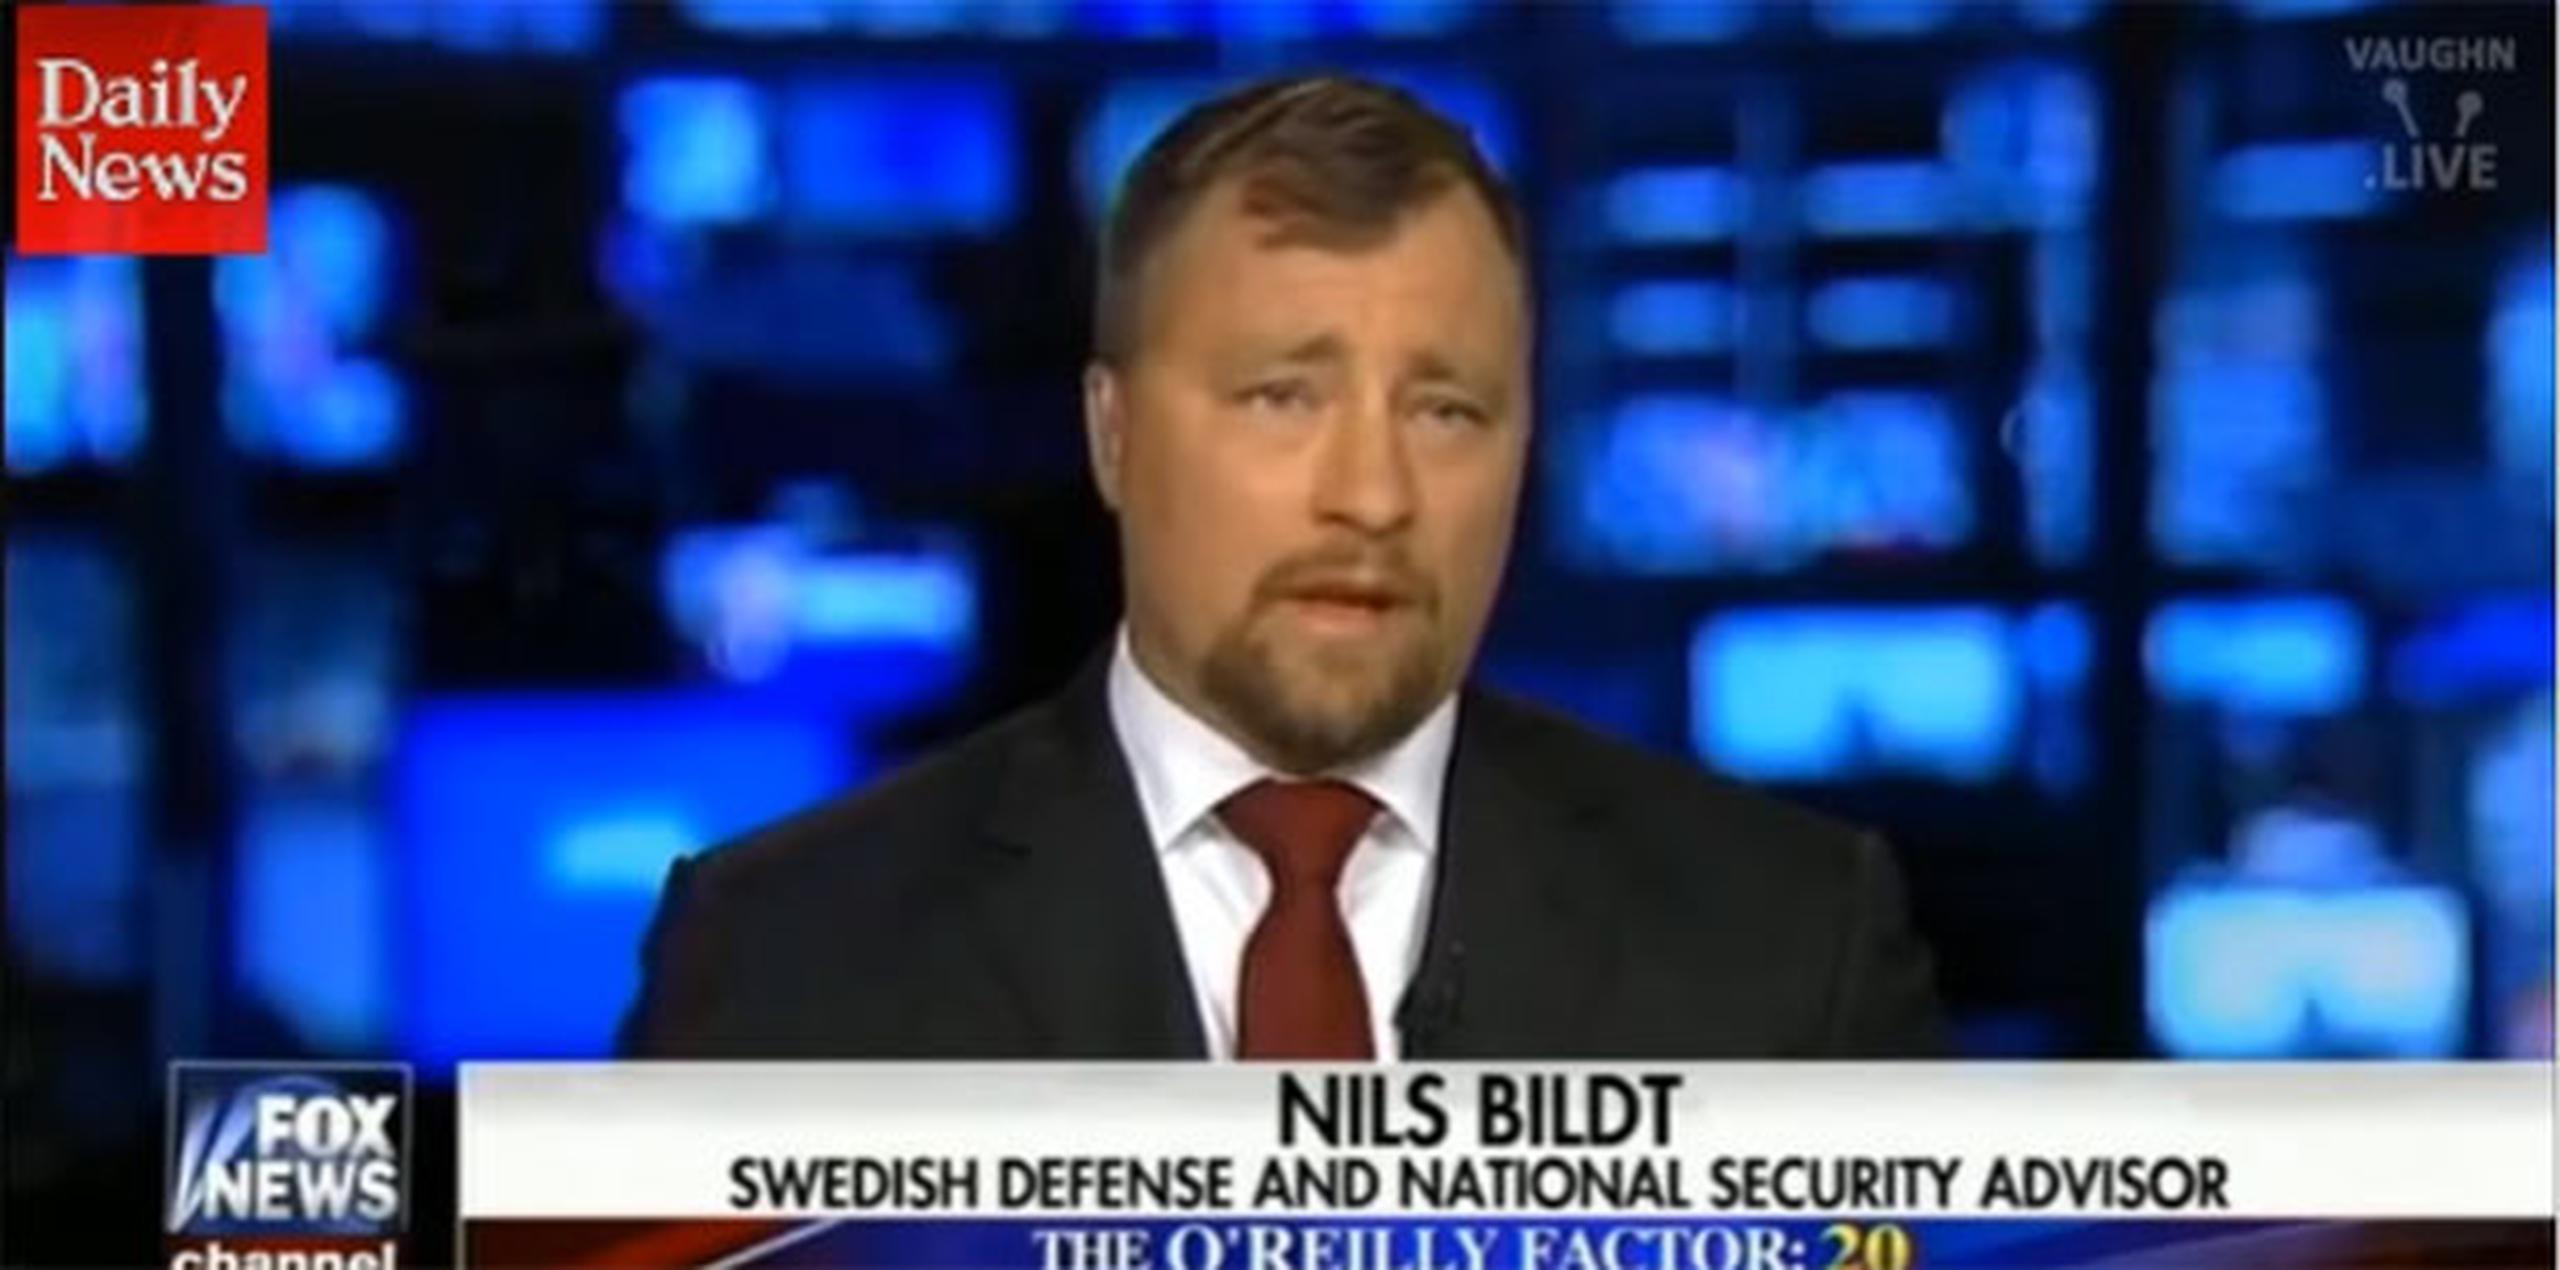 El jueves, el comentarista de Fox News Bill O'Reilly condujo una mesa redonda al aire sobre inmigración y la delincuencia en Suecia, en la que participaron un periodista sueco y un hombre identificado en pantalla y verbalmente como el "asesor sueco de defensa y seguridad nacional" Nils Bildt. (Youtube)